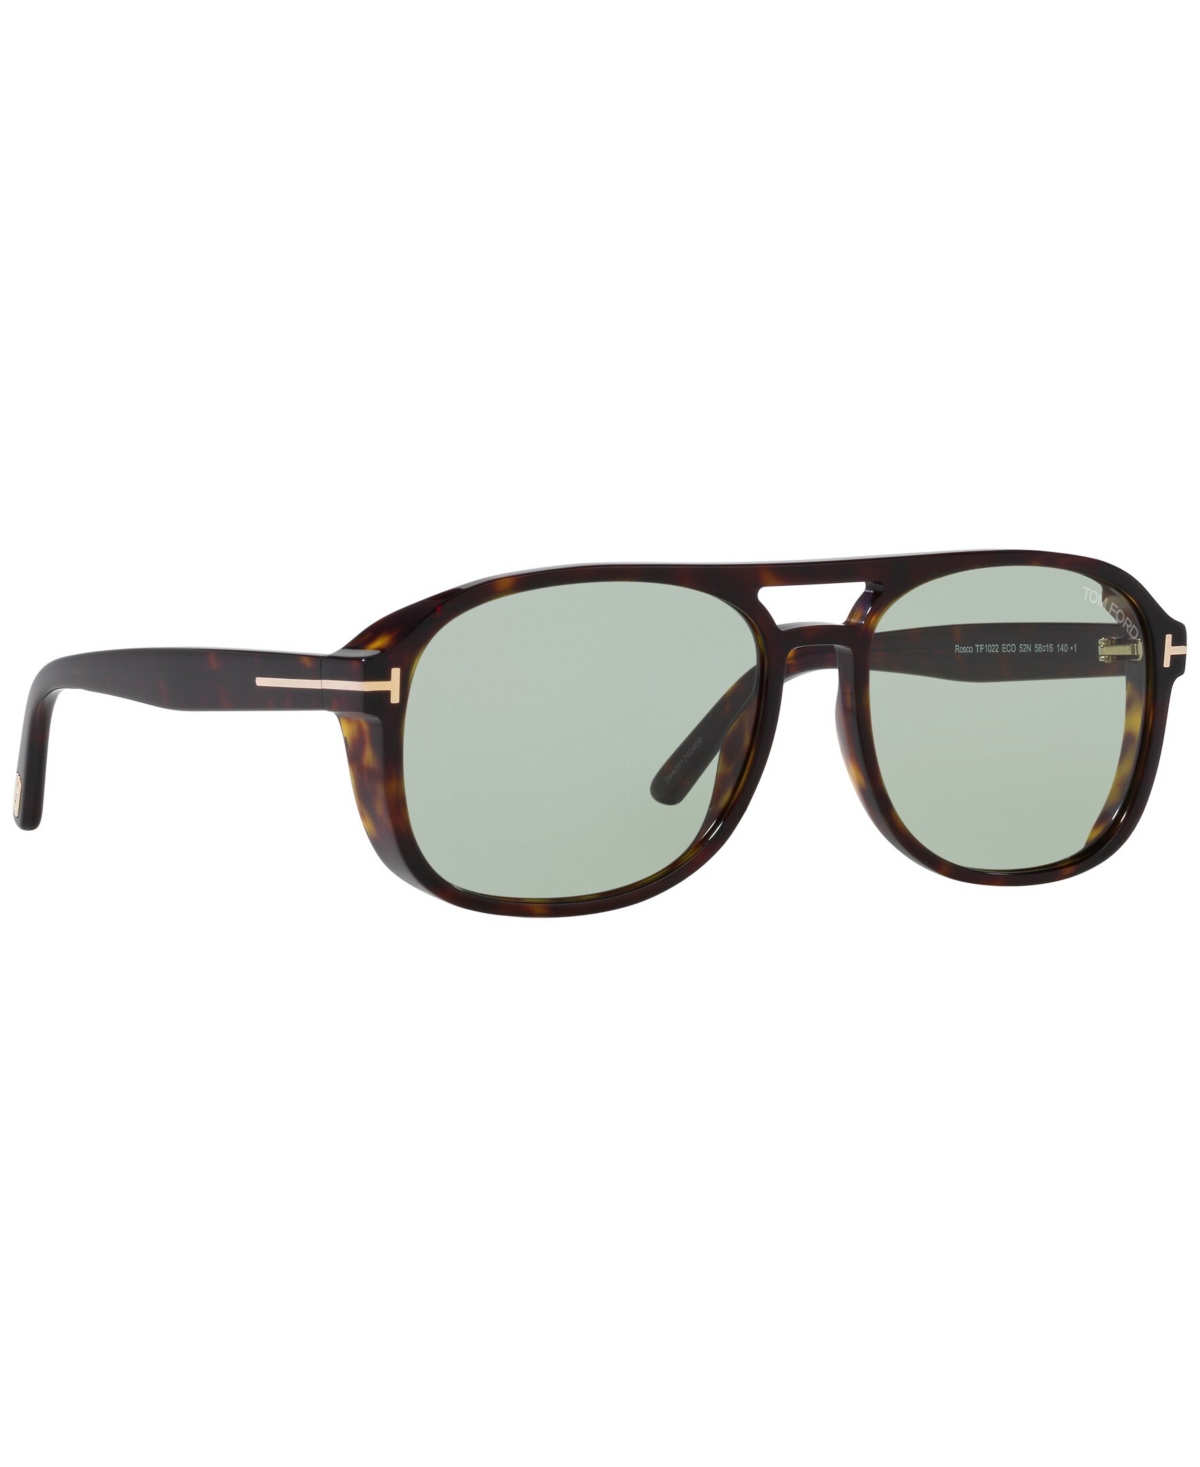 Tom Ford Men's Sunglasses, Rosco In Tortoise Black